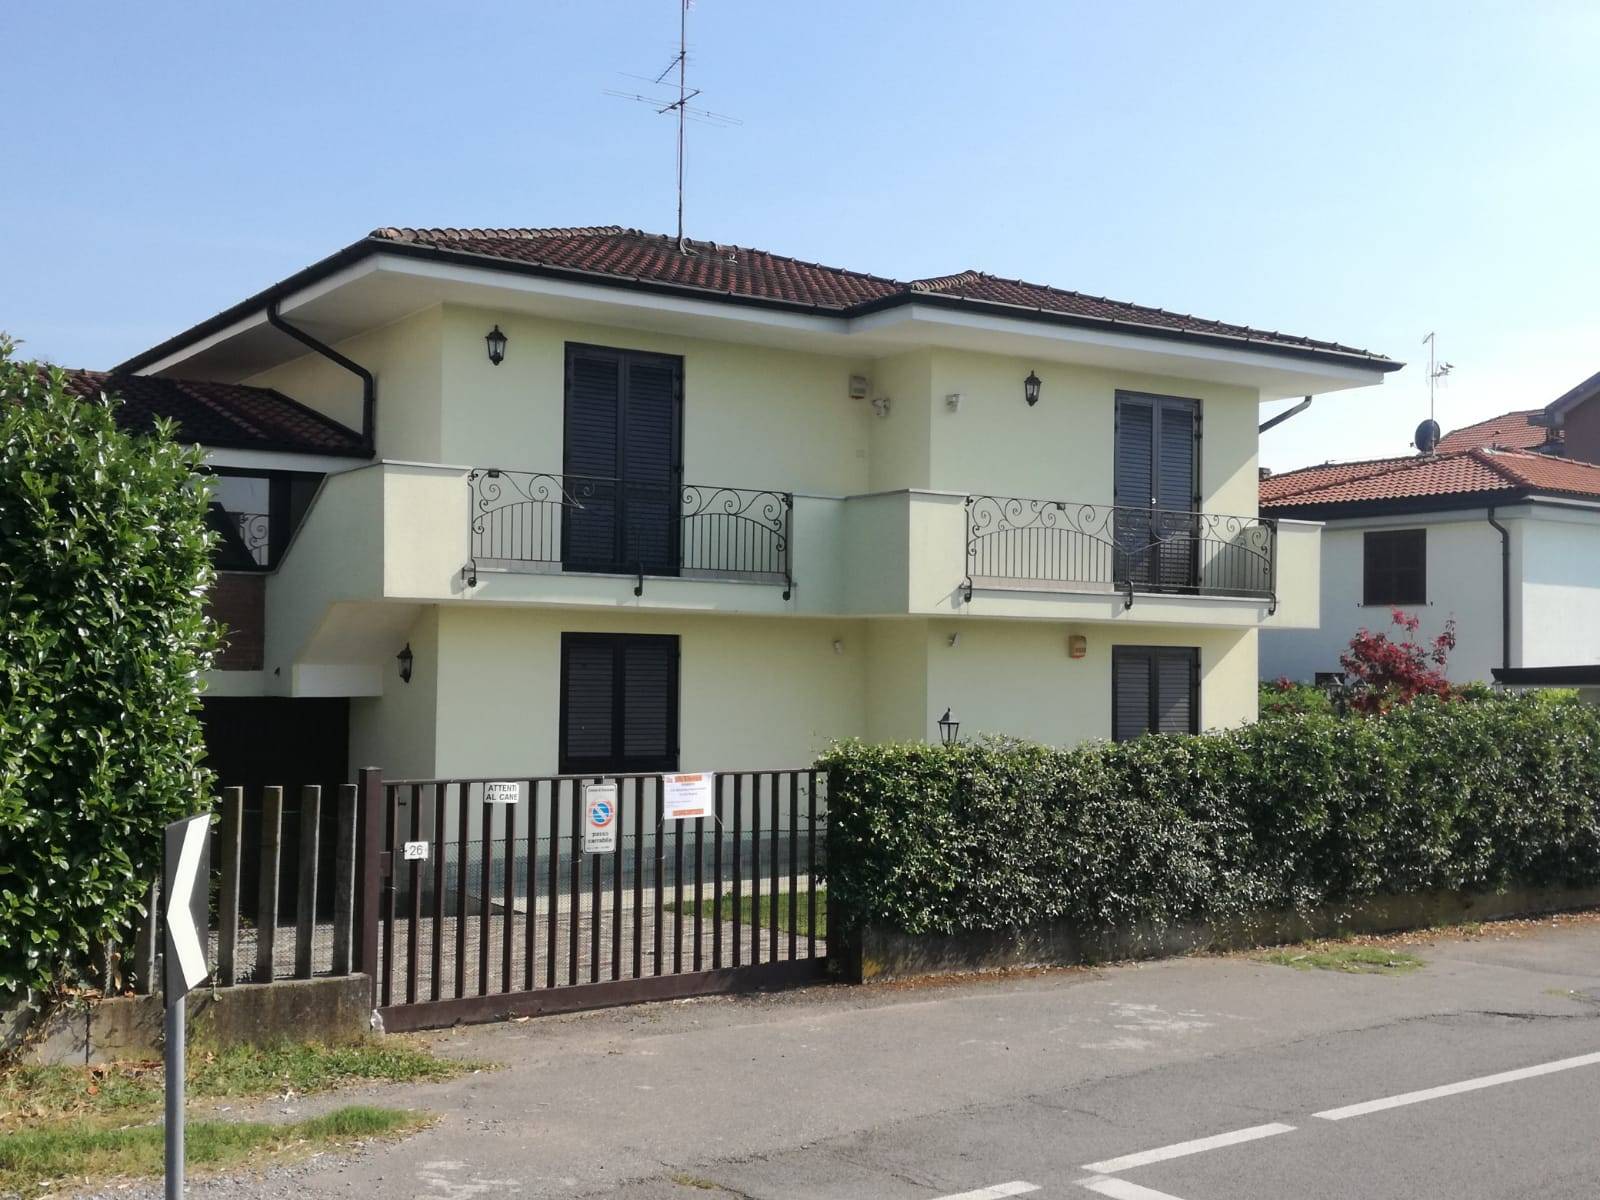 Villa in vendita a Truccazzano, 5 locali, prezzo € 530.000 | PortaleAgenzieImmobiliari.it